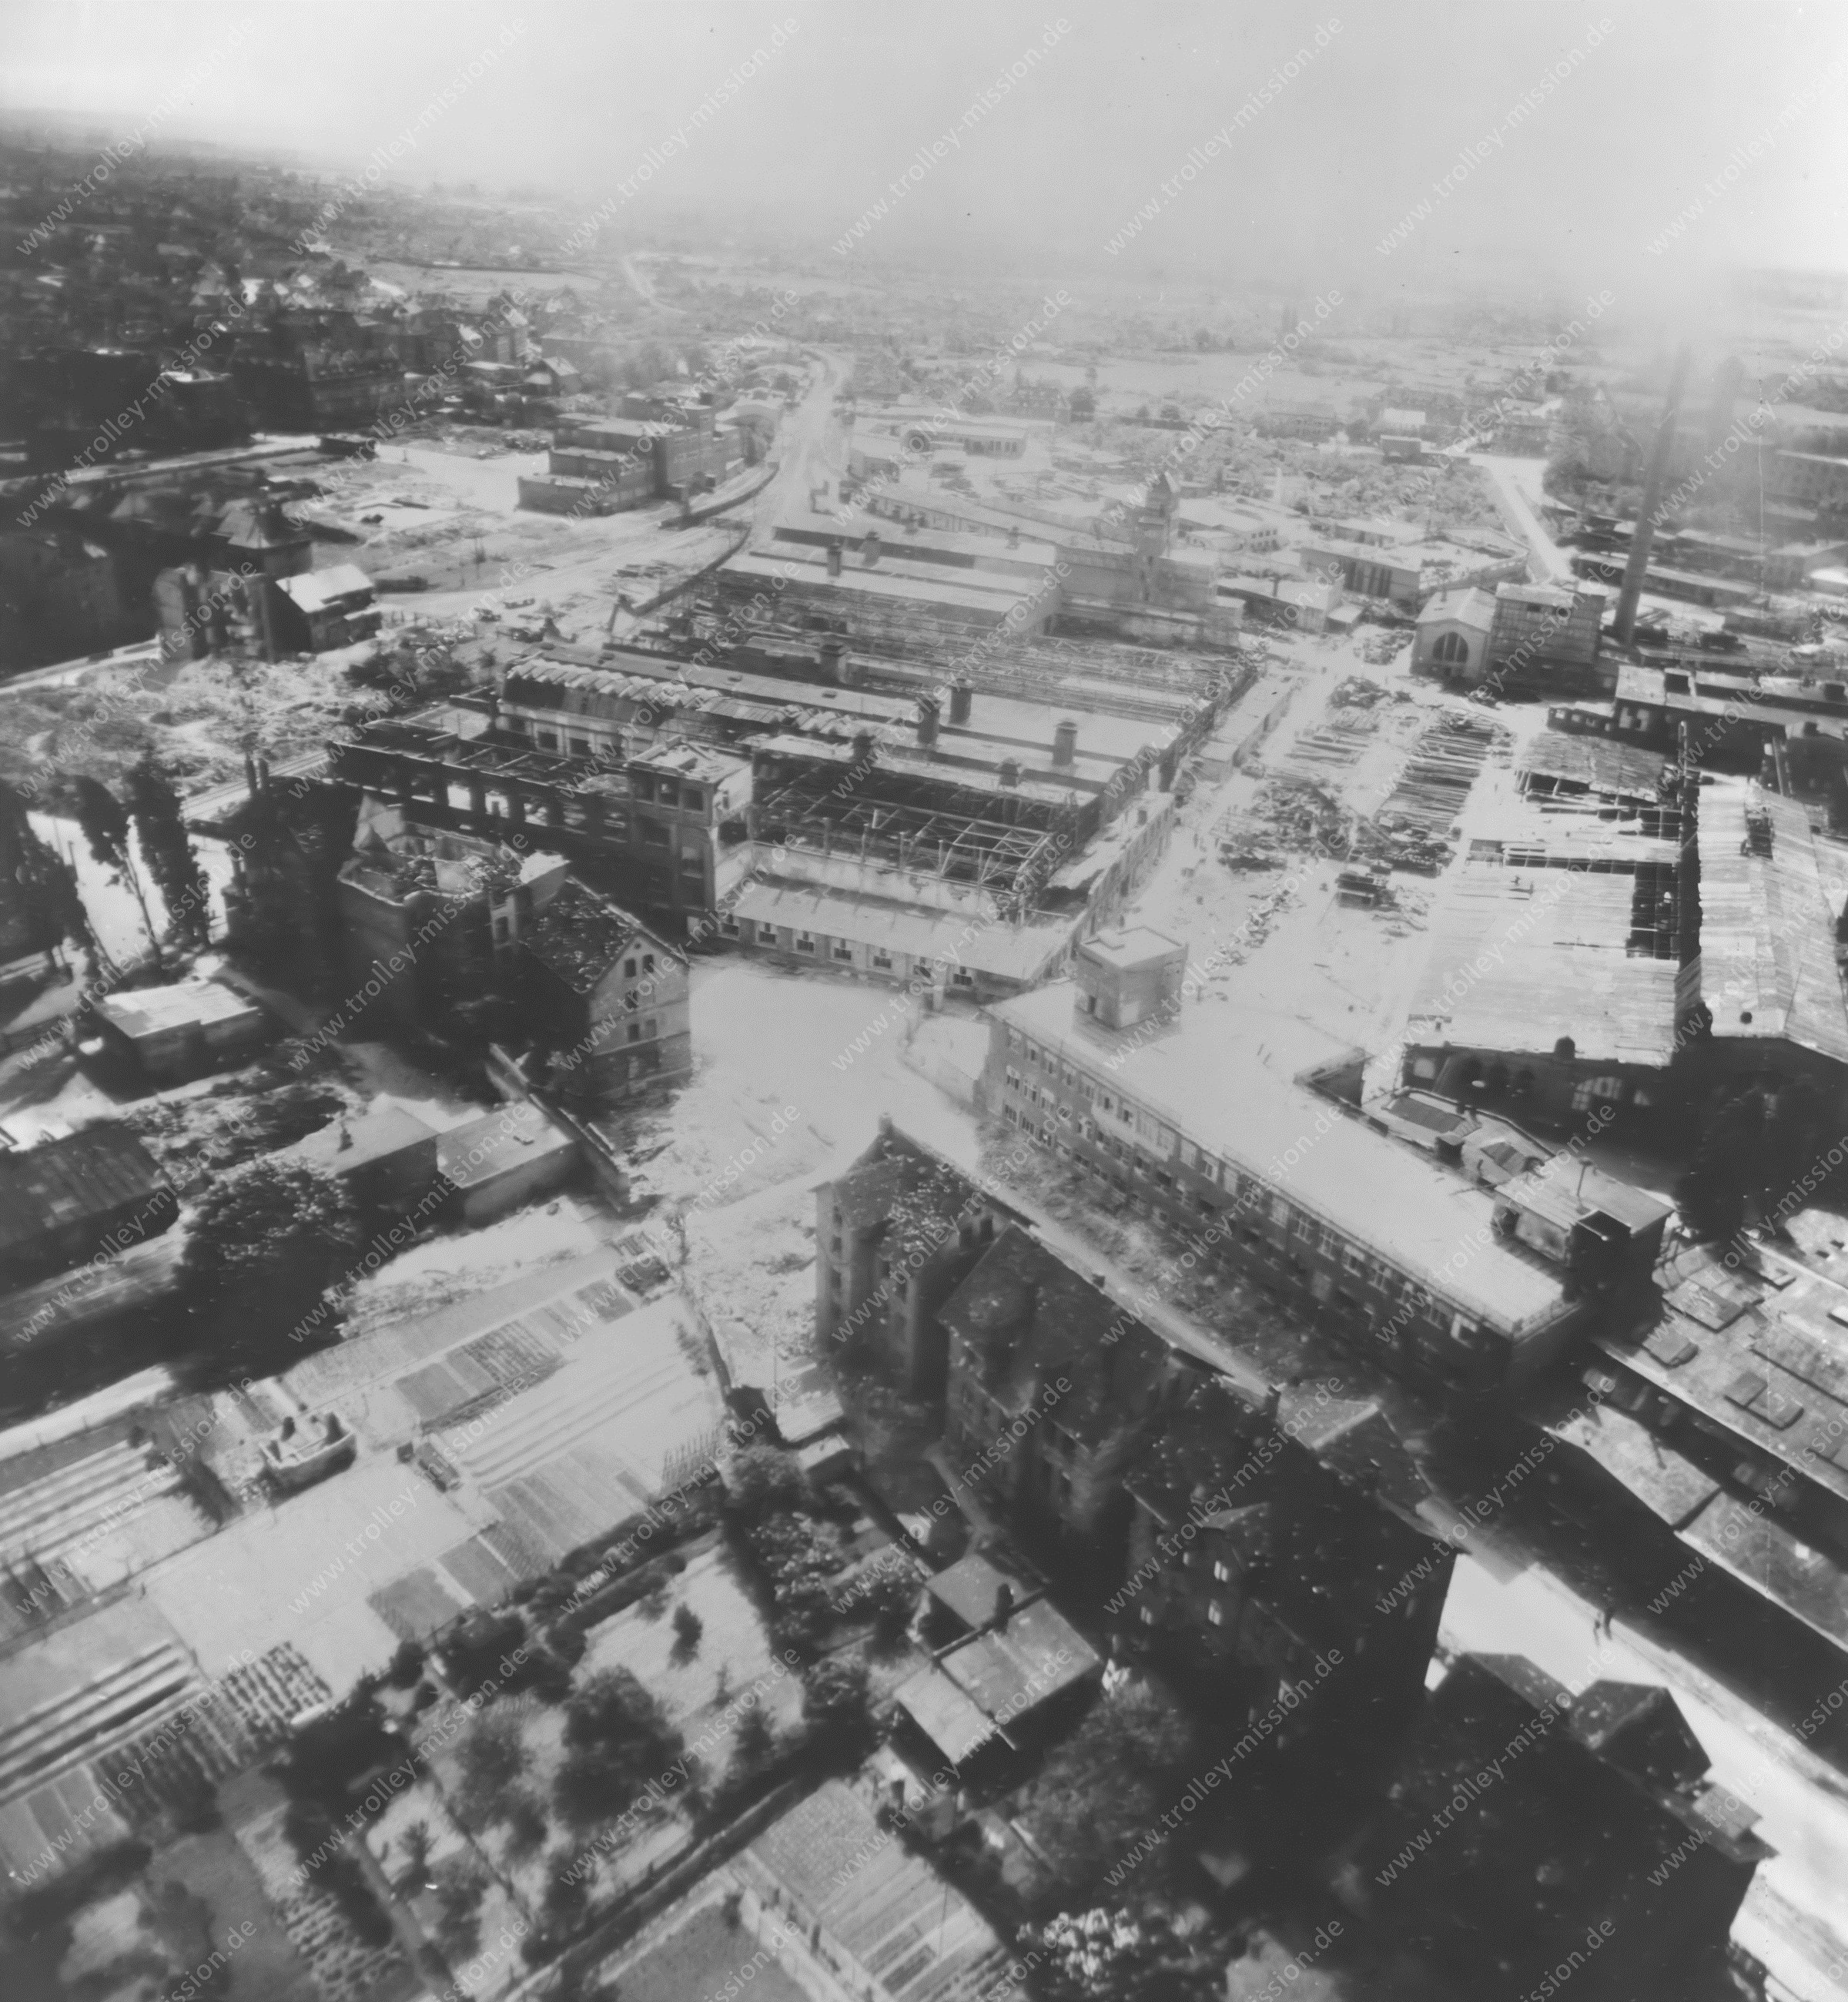 Luftbild der MIAG Werke (Bühler AG) in Braunschweig an der Ernst-Amme-Straße und Julius-Konegen-Straße